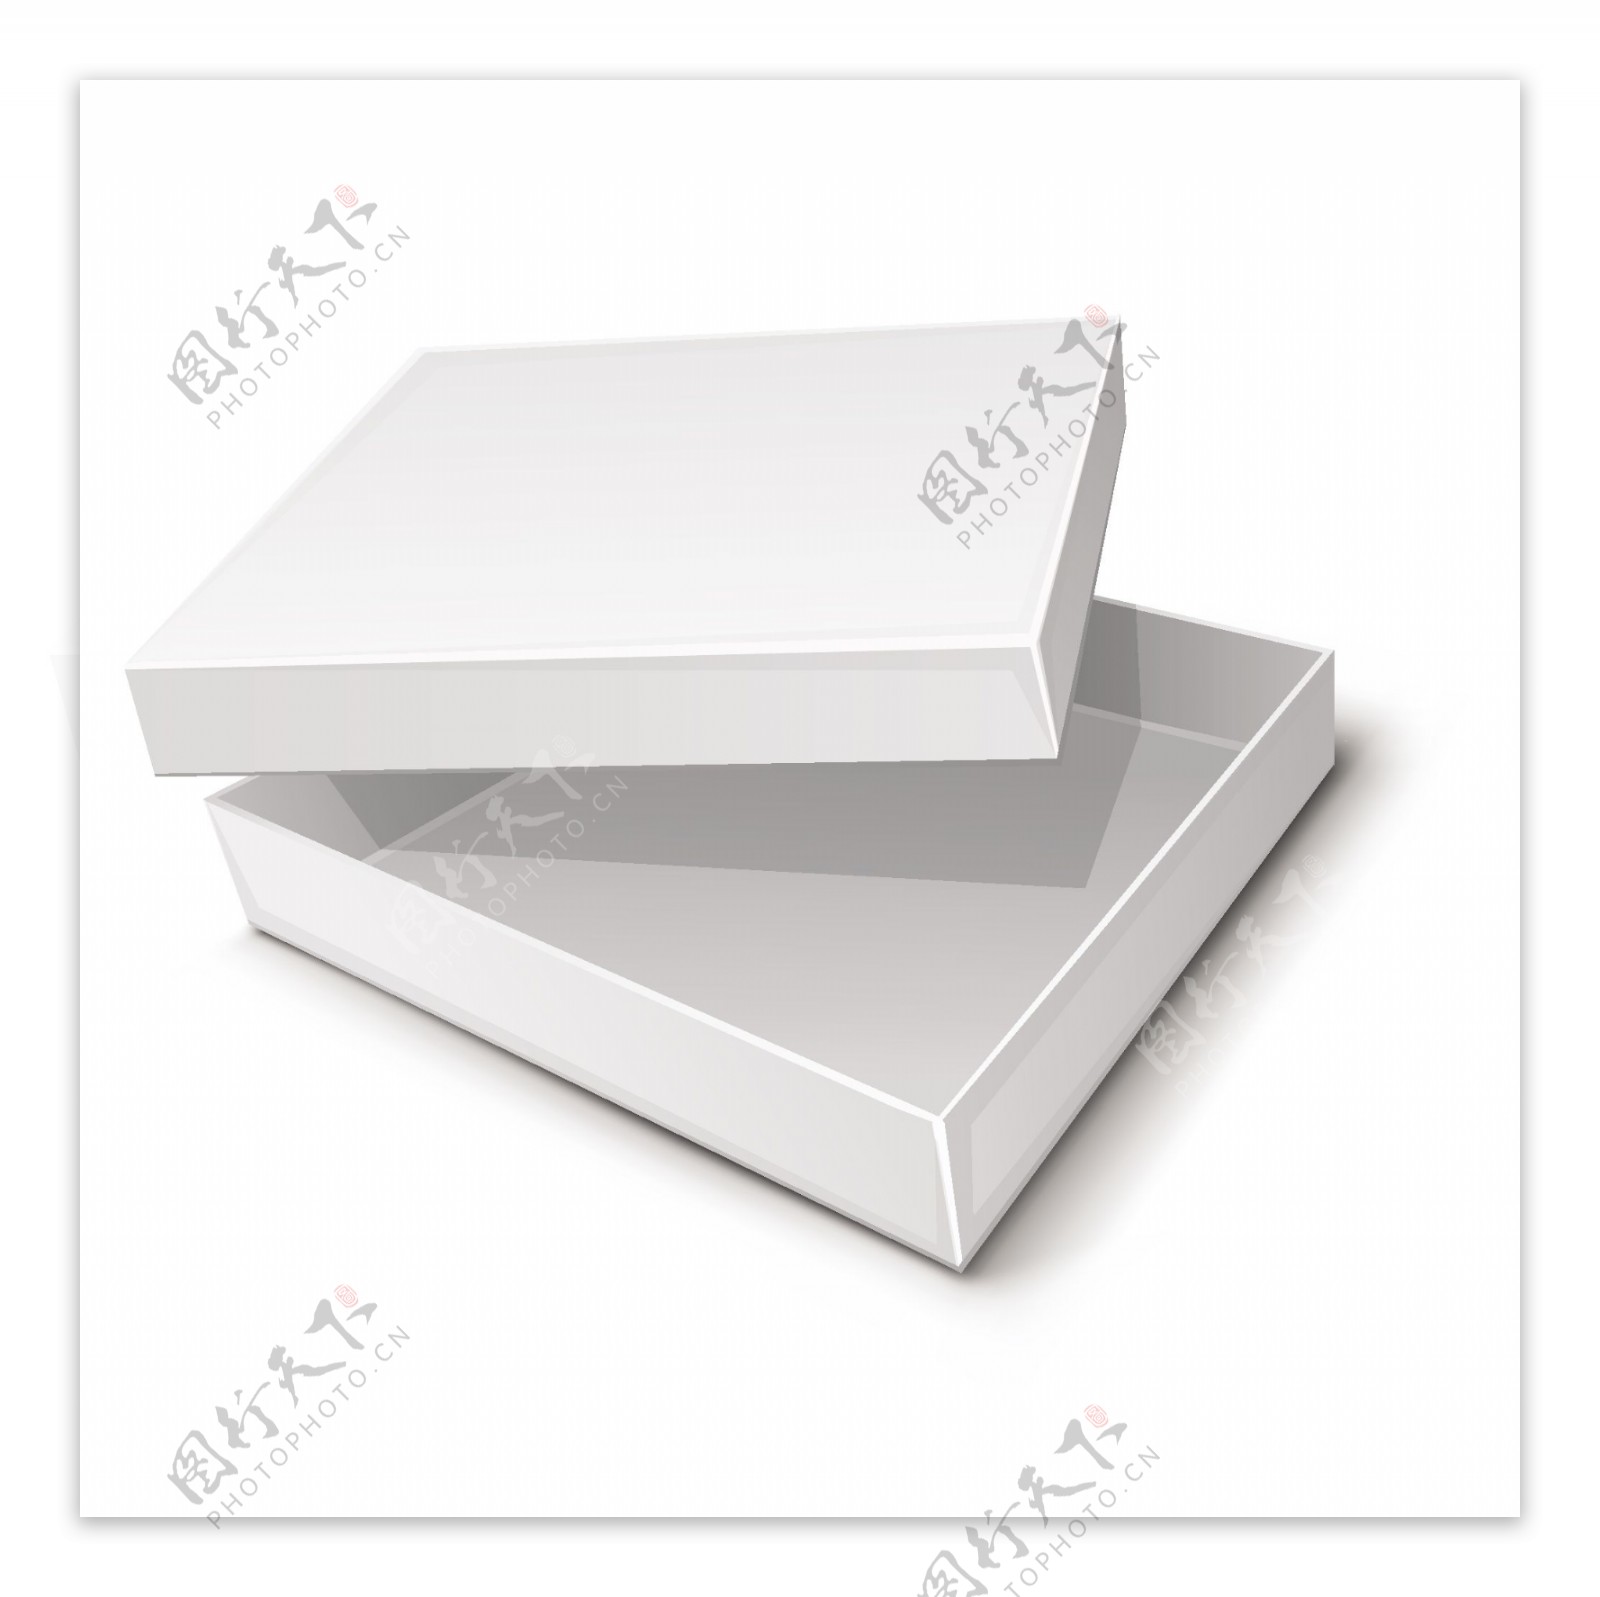 空白盒子包装设计模板矢量素材